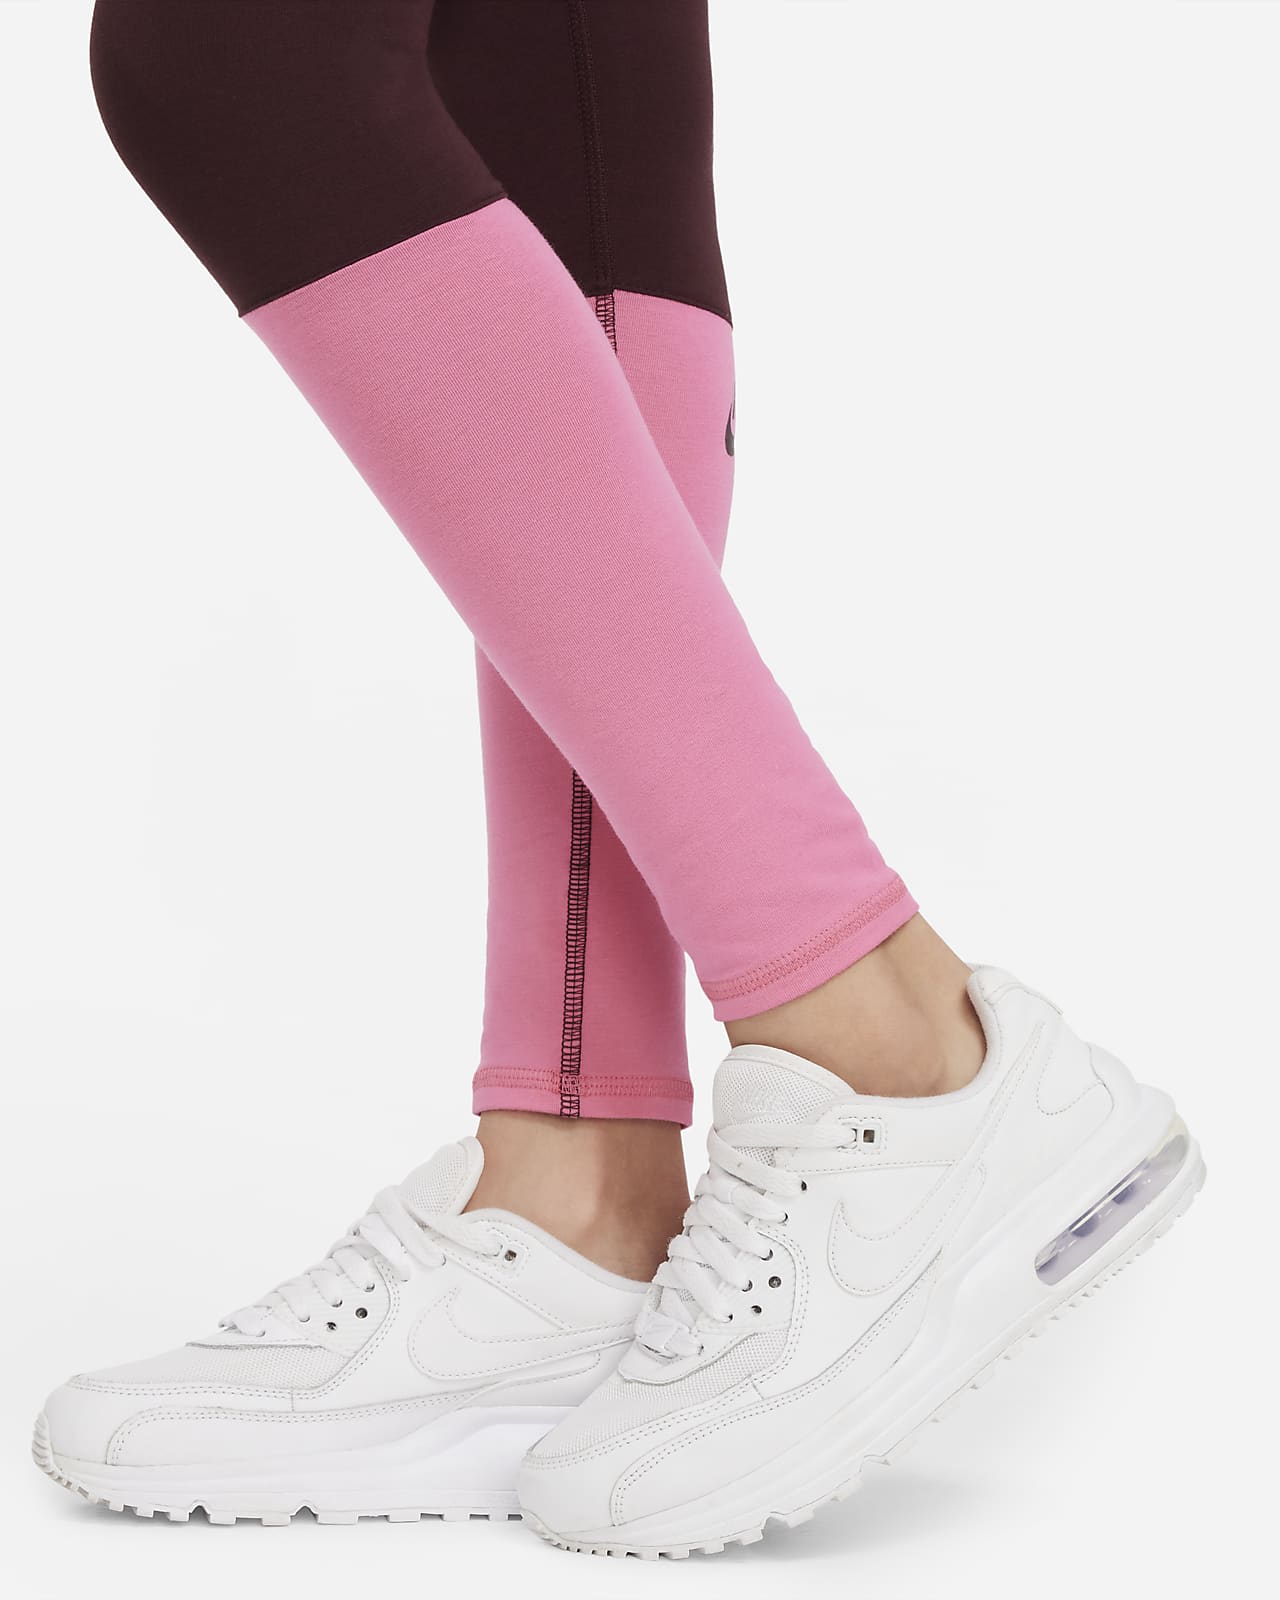 Girls' trousers Nike Sportswear Favorites Swoosh Legging G - pink